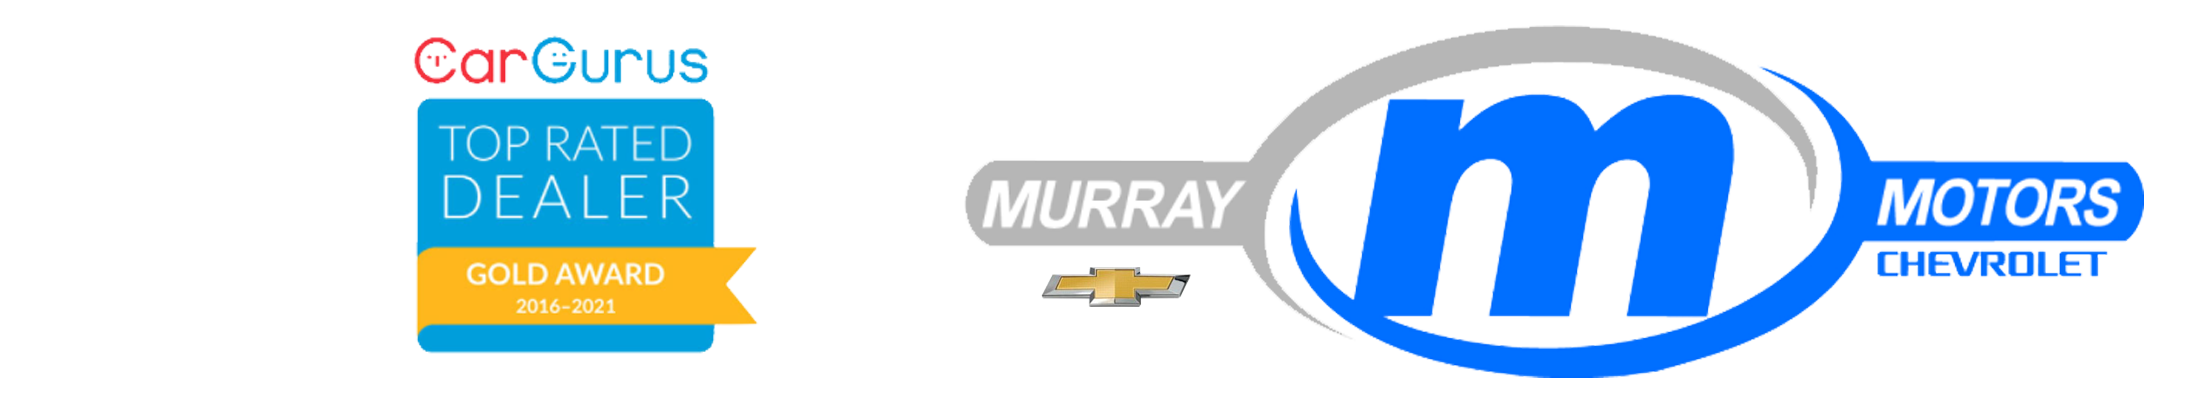 www.murraychevy.com